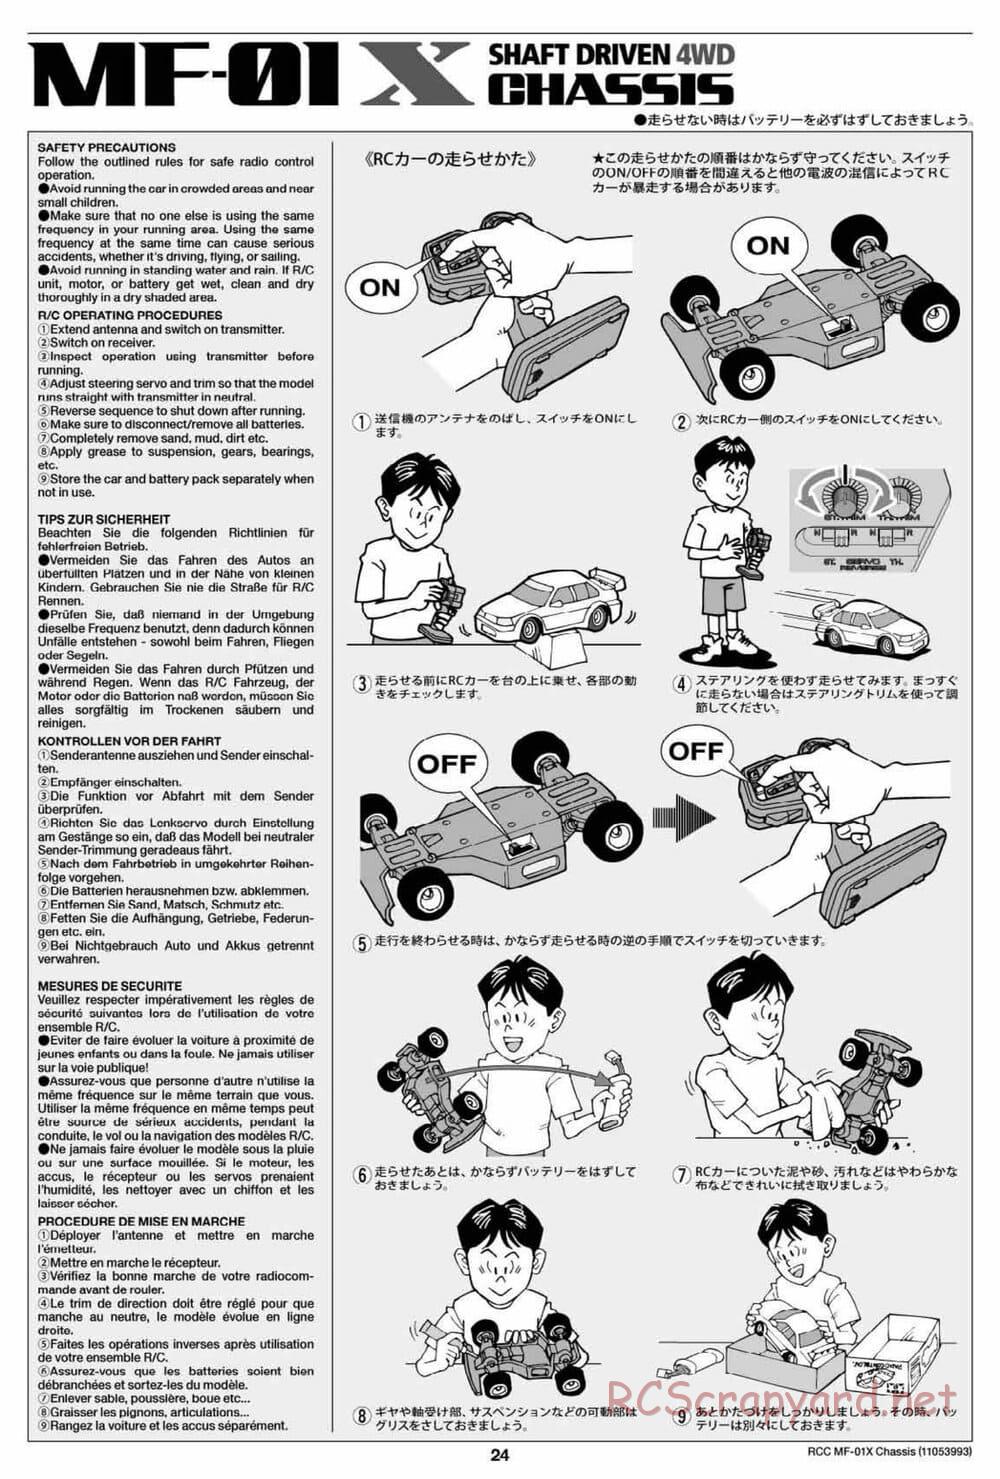 Tamiya - MF-01X Chassis - Manual - Page 24